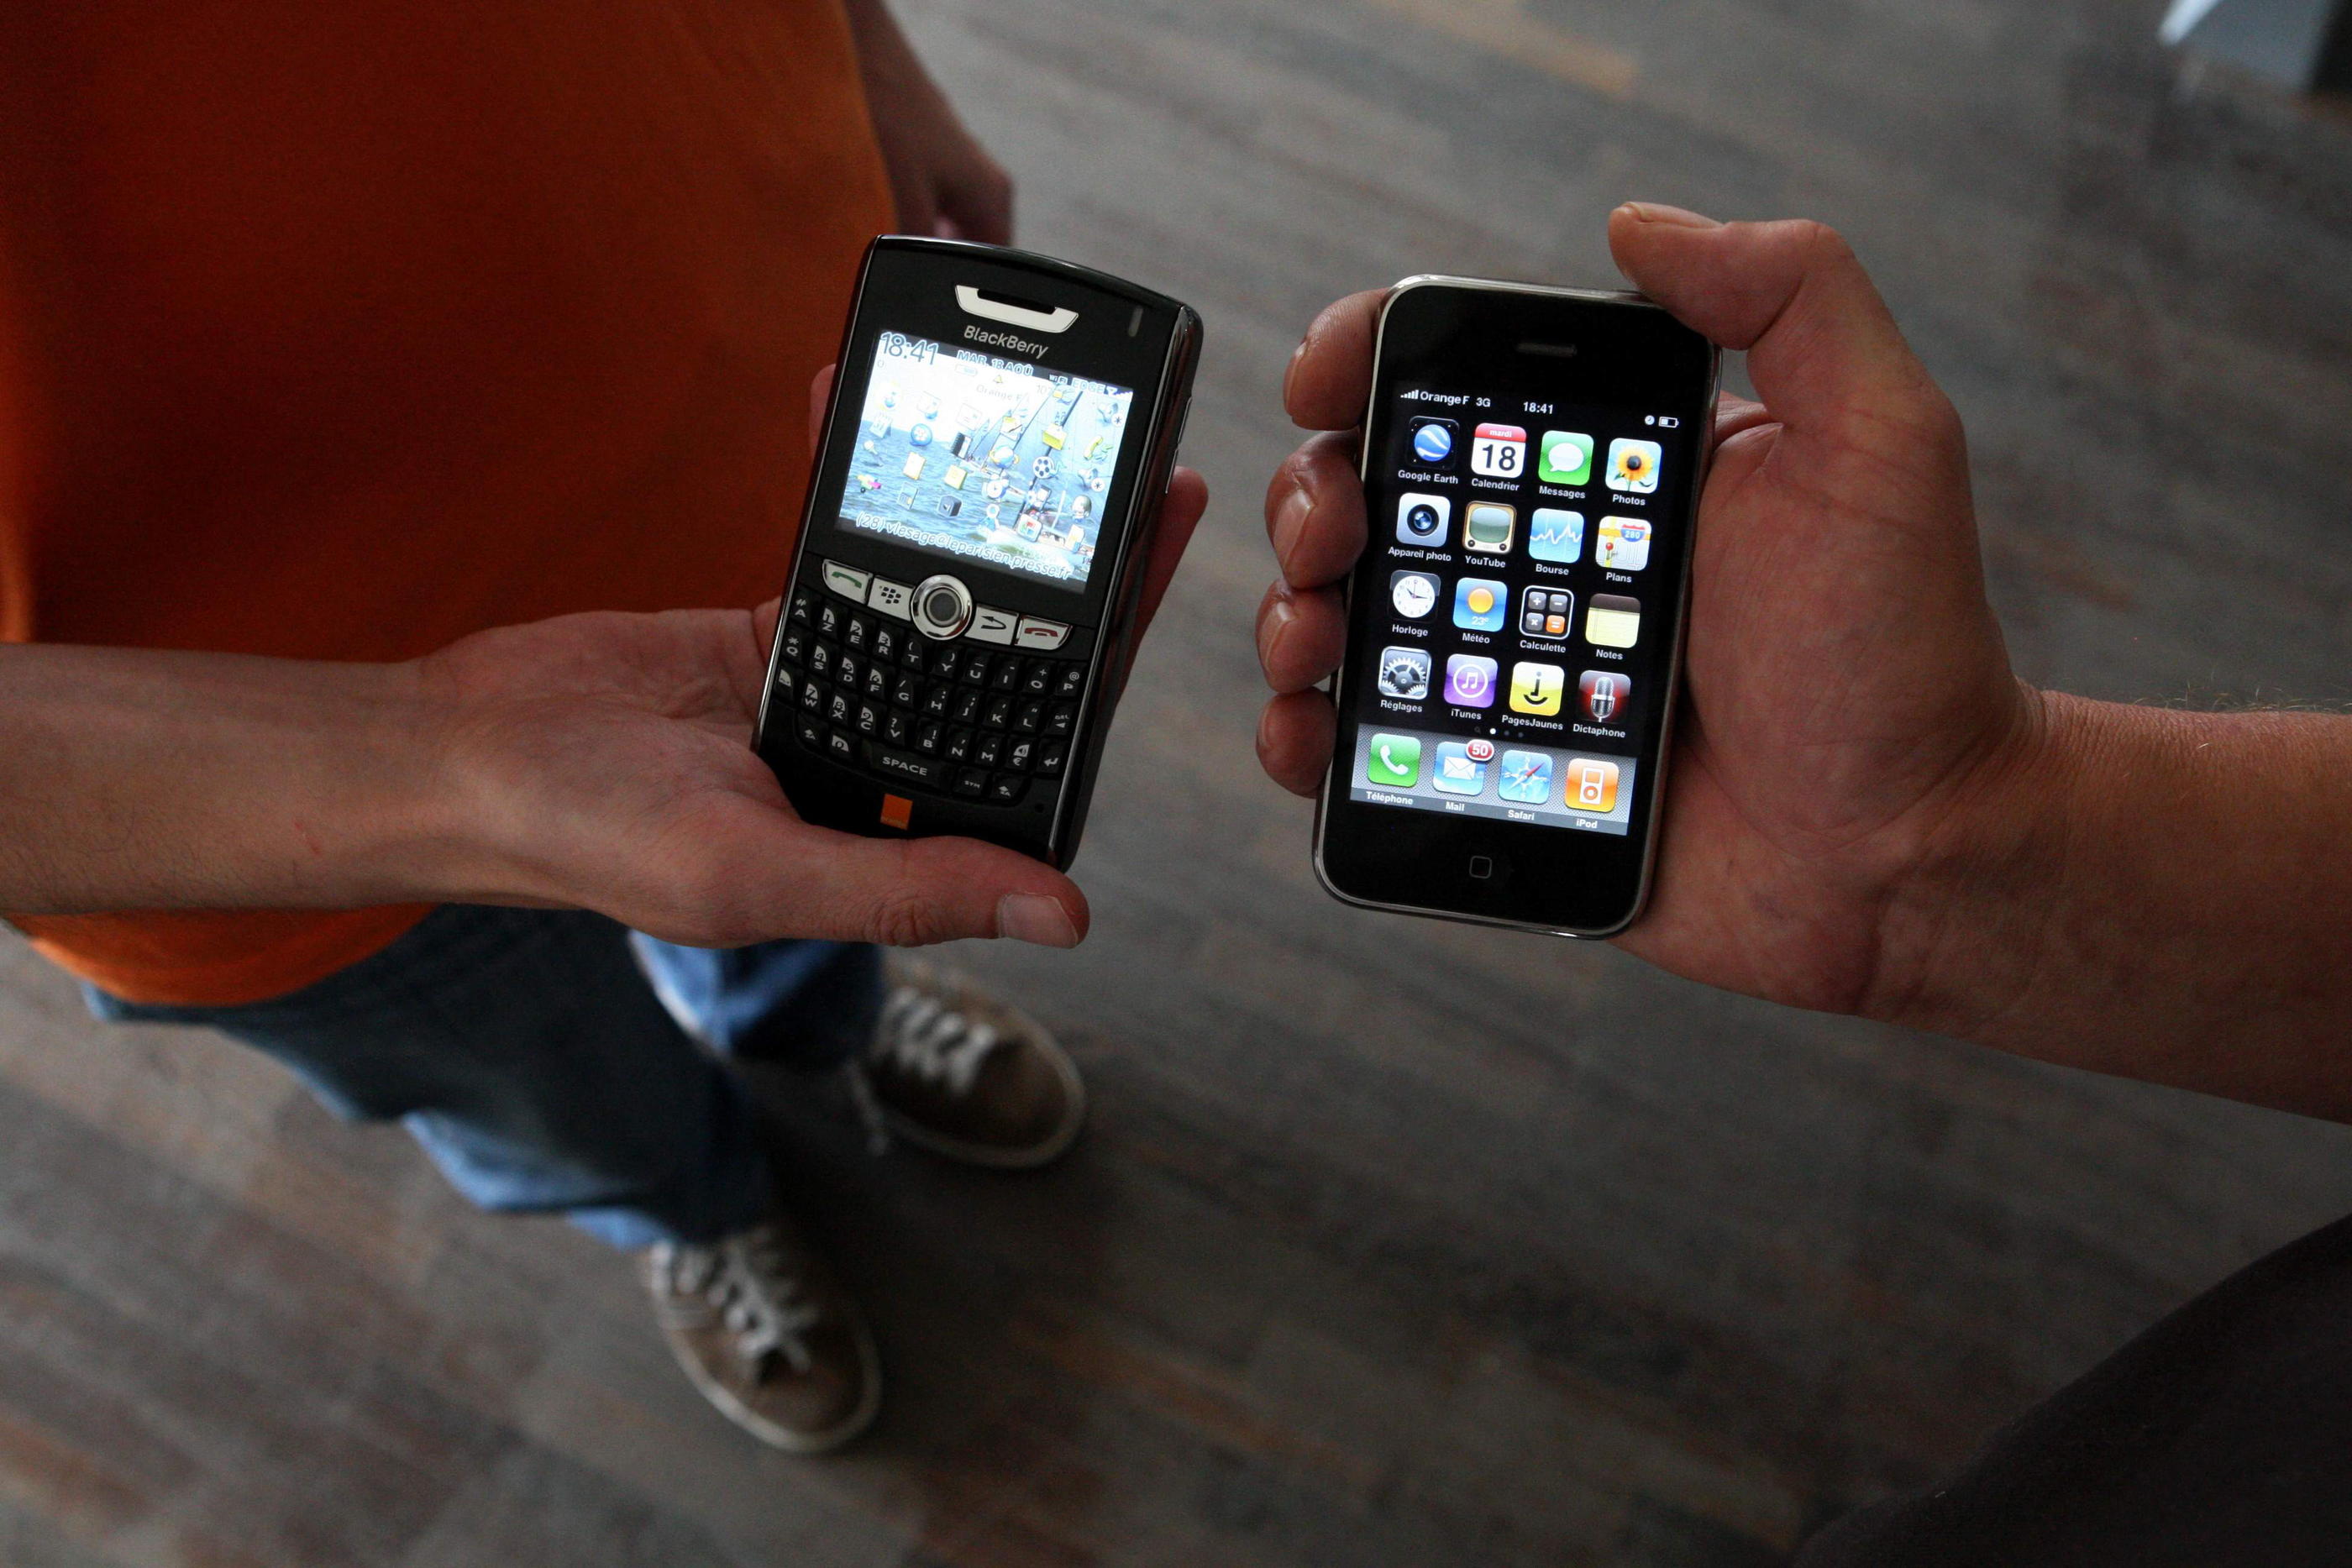 L'arrivée sur le marché de l'iPhone, en 2007, a rapidement mis à mal les ventes de BlackBerry. LP/Philippe de Poulpiquet